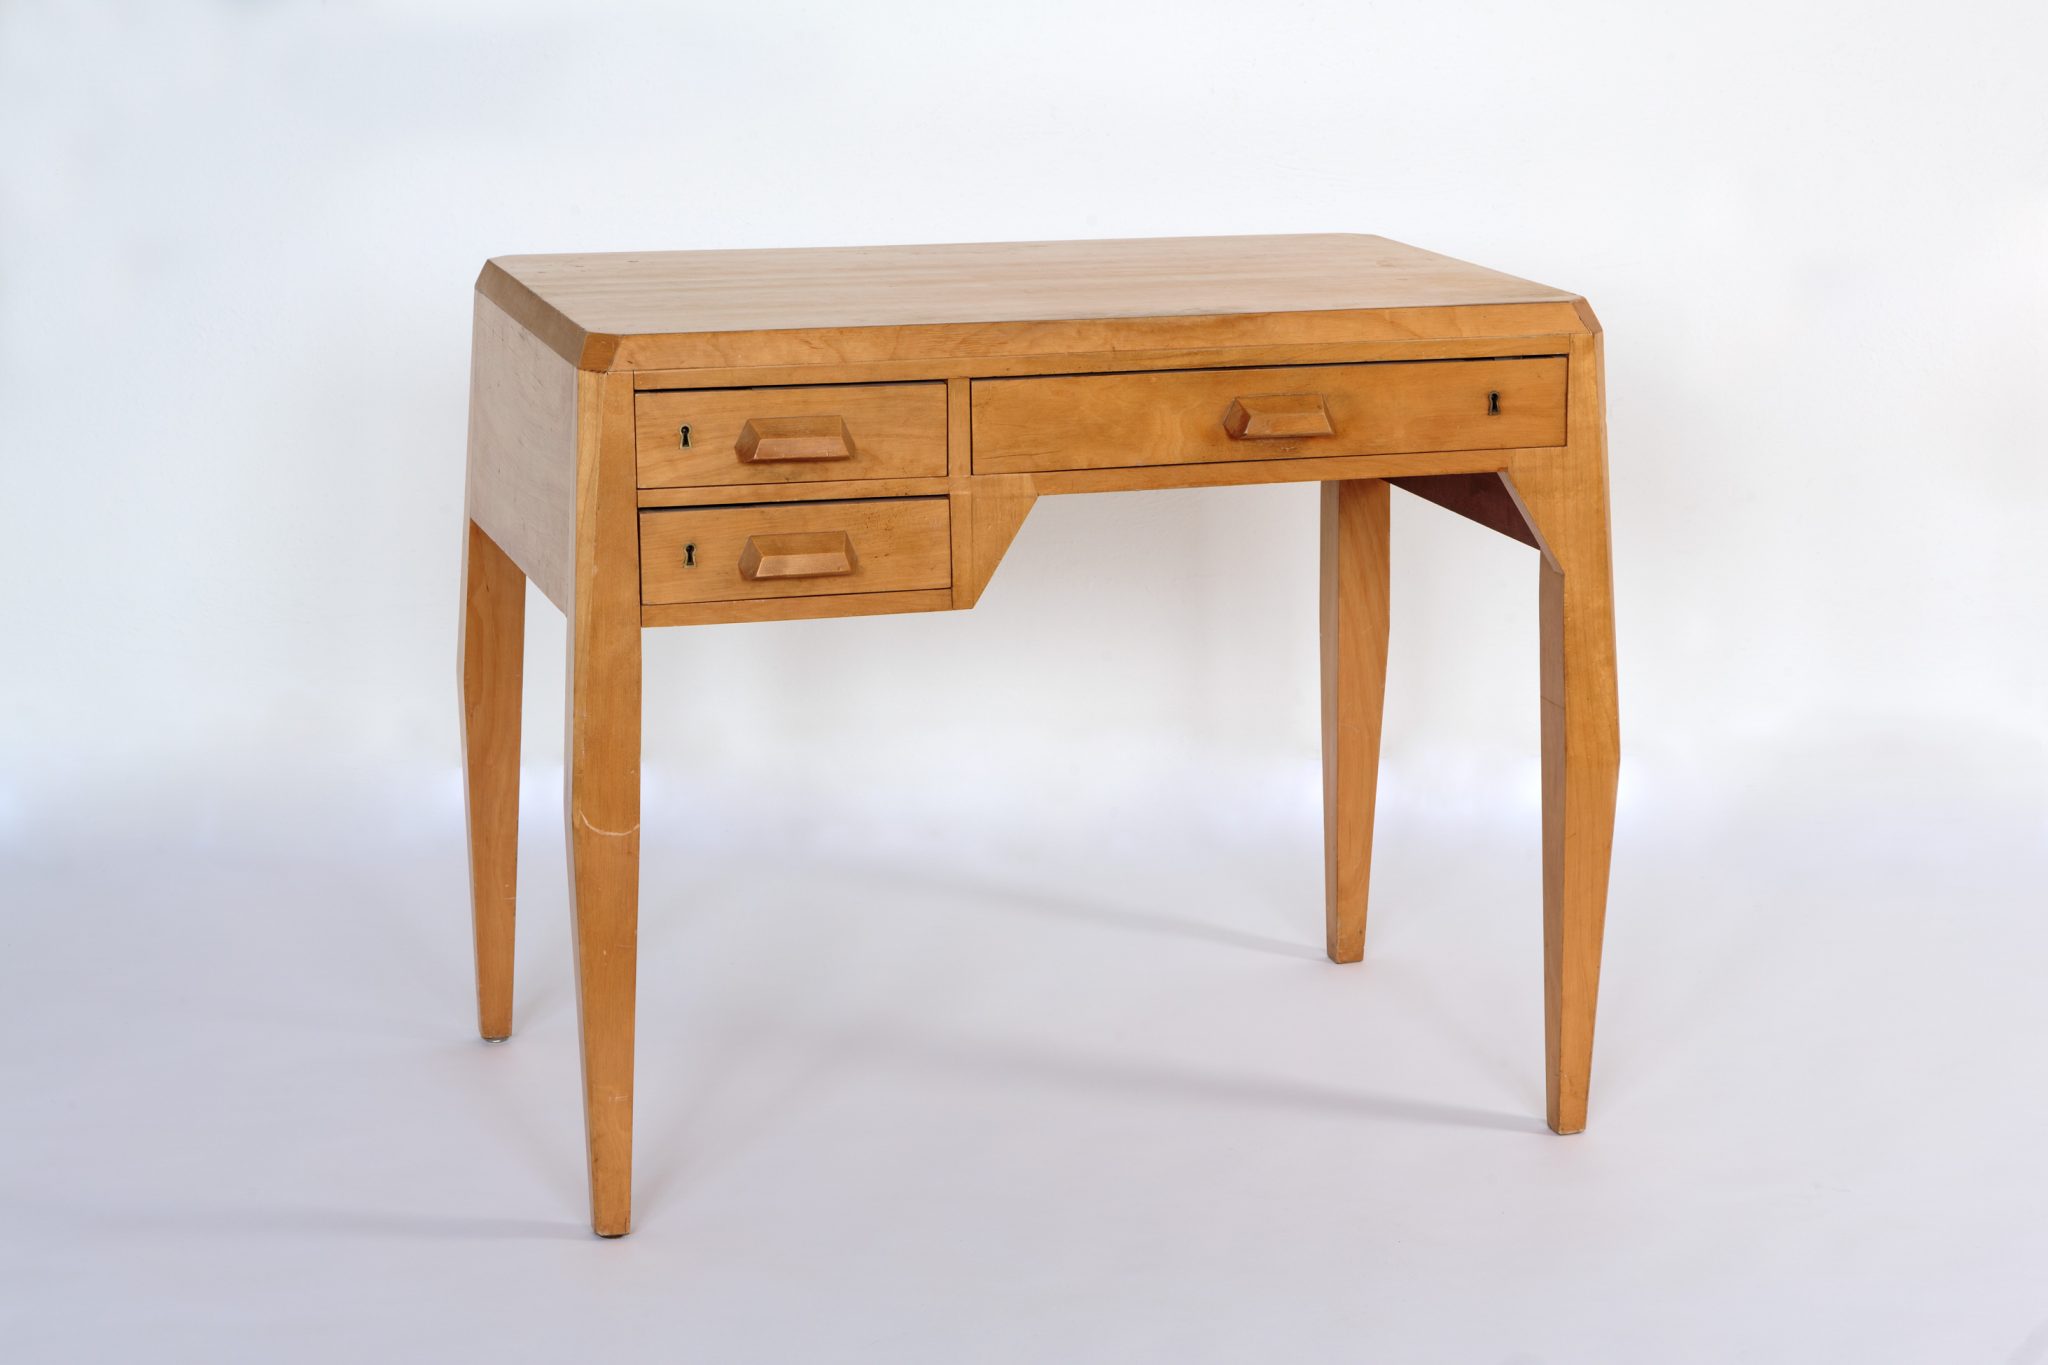 Felix Kayser - Ladies table, wooden veneer, Period: anthroposophical style